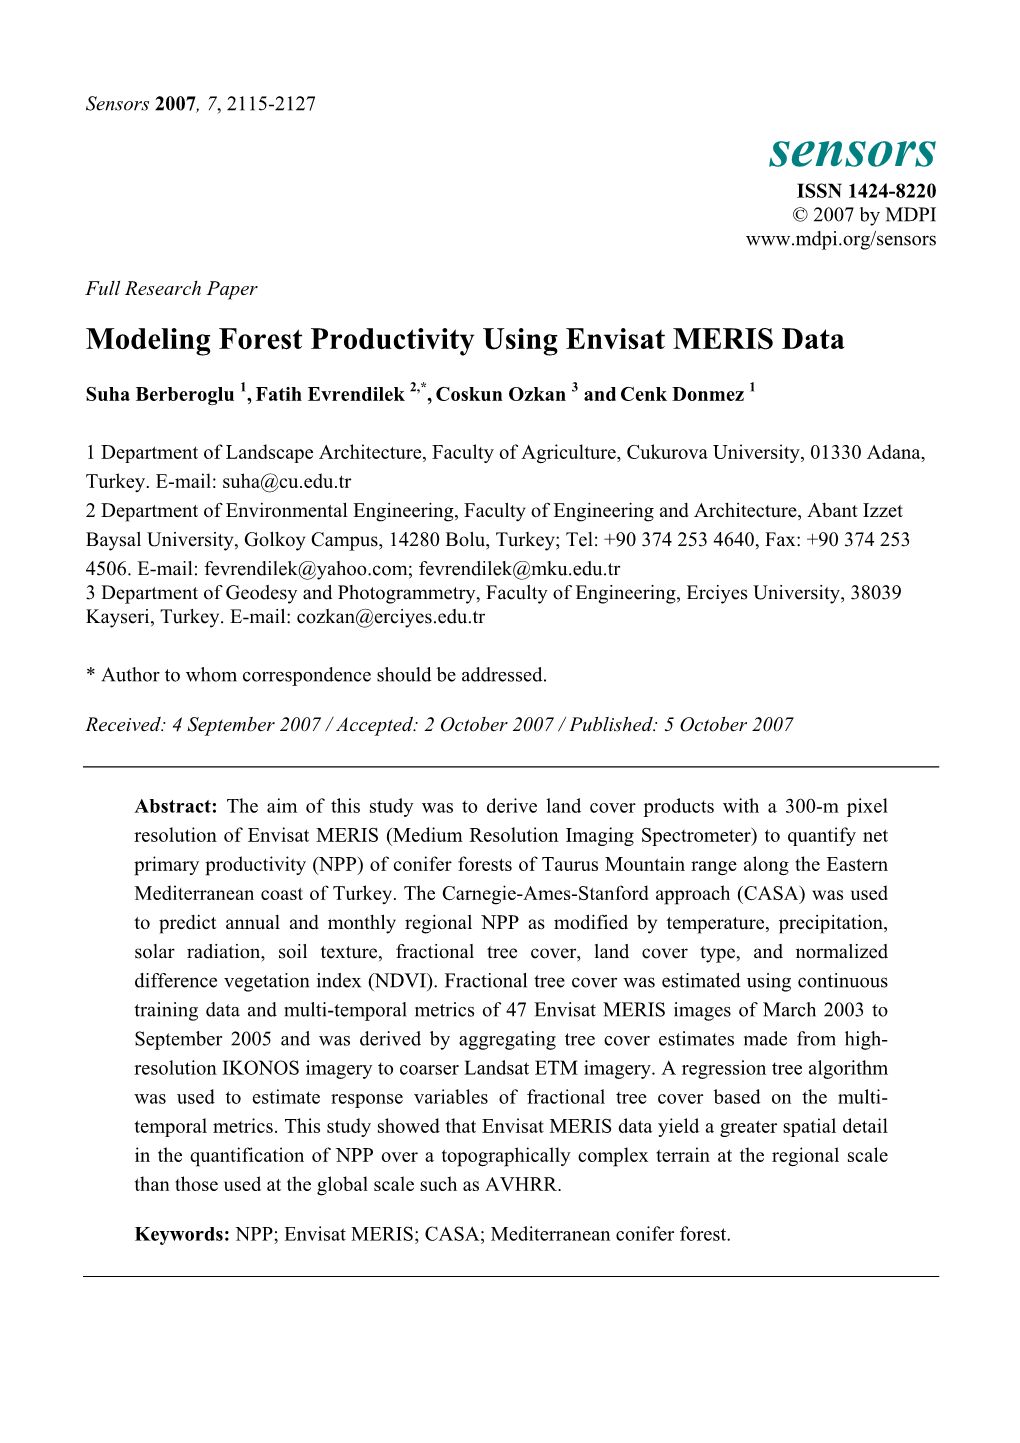 Modeling Forest Productivity Using Envisat MERIS Data